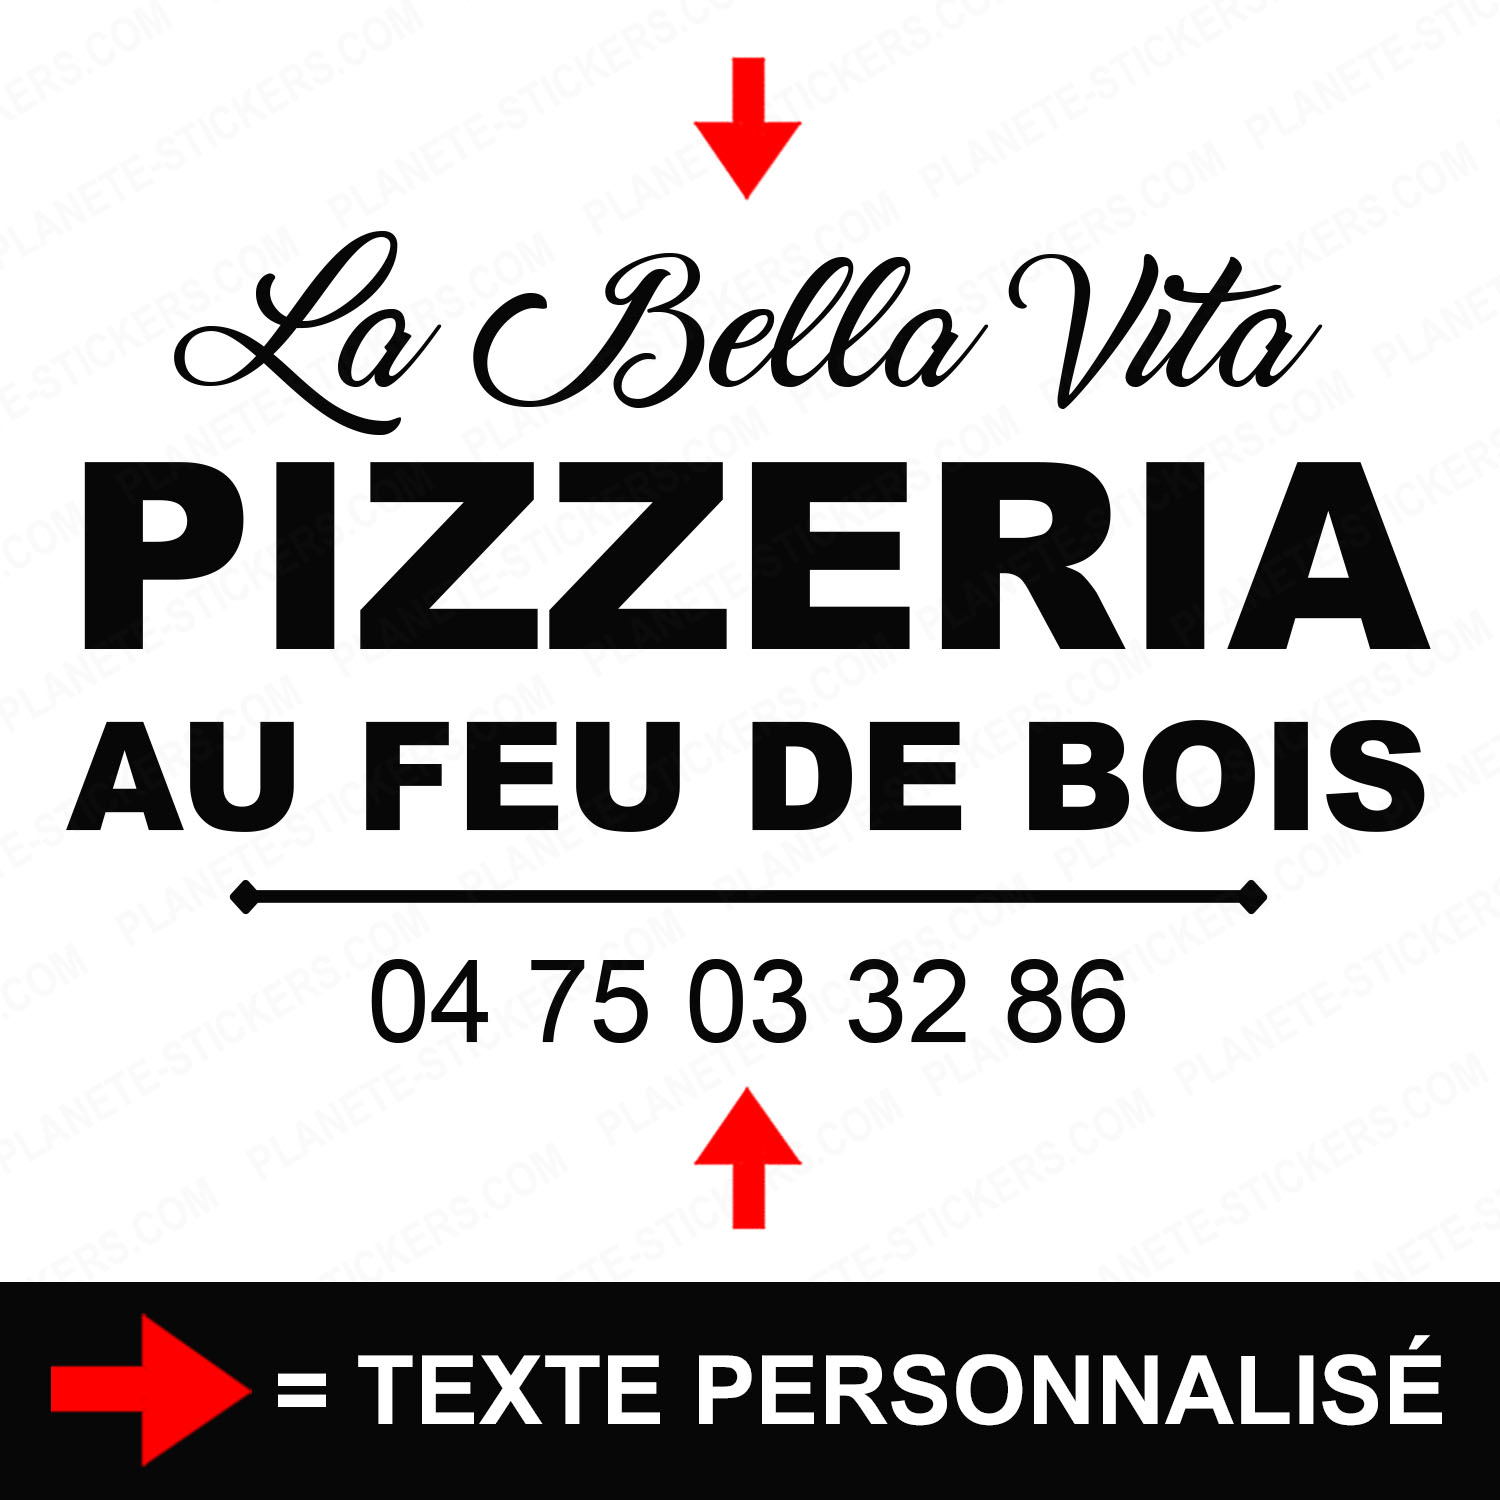 ref30pizzeriavitrine-stickers-pizzeria-au-feu-de-bois-vitrine-pizza-restaurant-sticker-personnalisé-autocollant-pro-restaurateur-vitre-resto-professionnel-logo-écriture-2